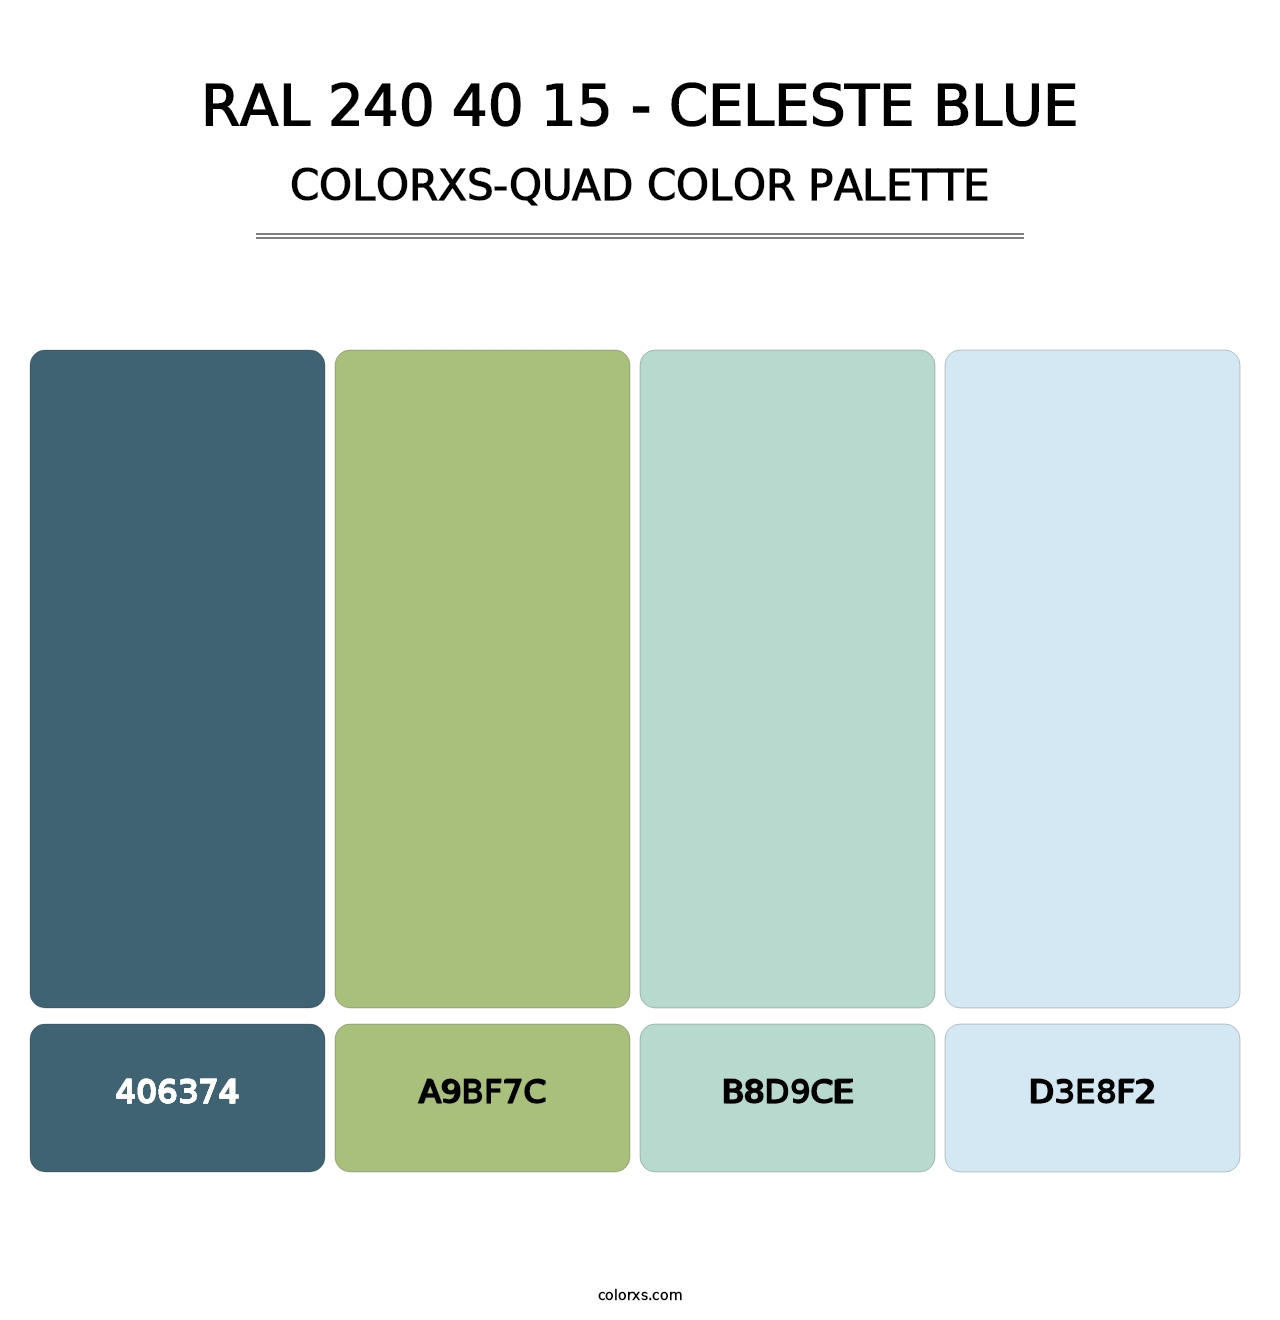 RAL 240 40 15 - Celeste Blue - Colorxs Quad Palette